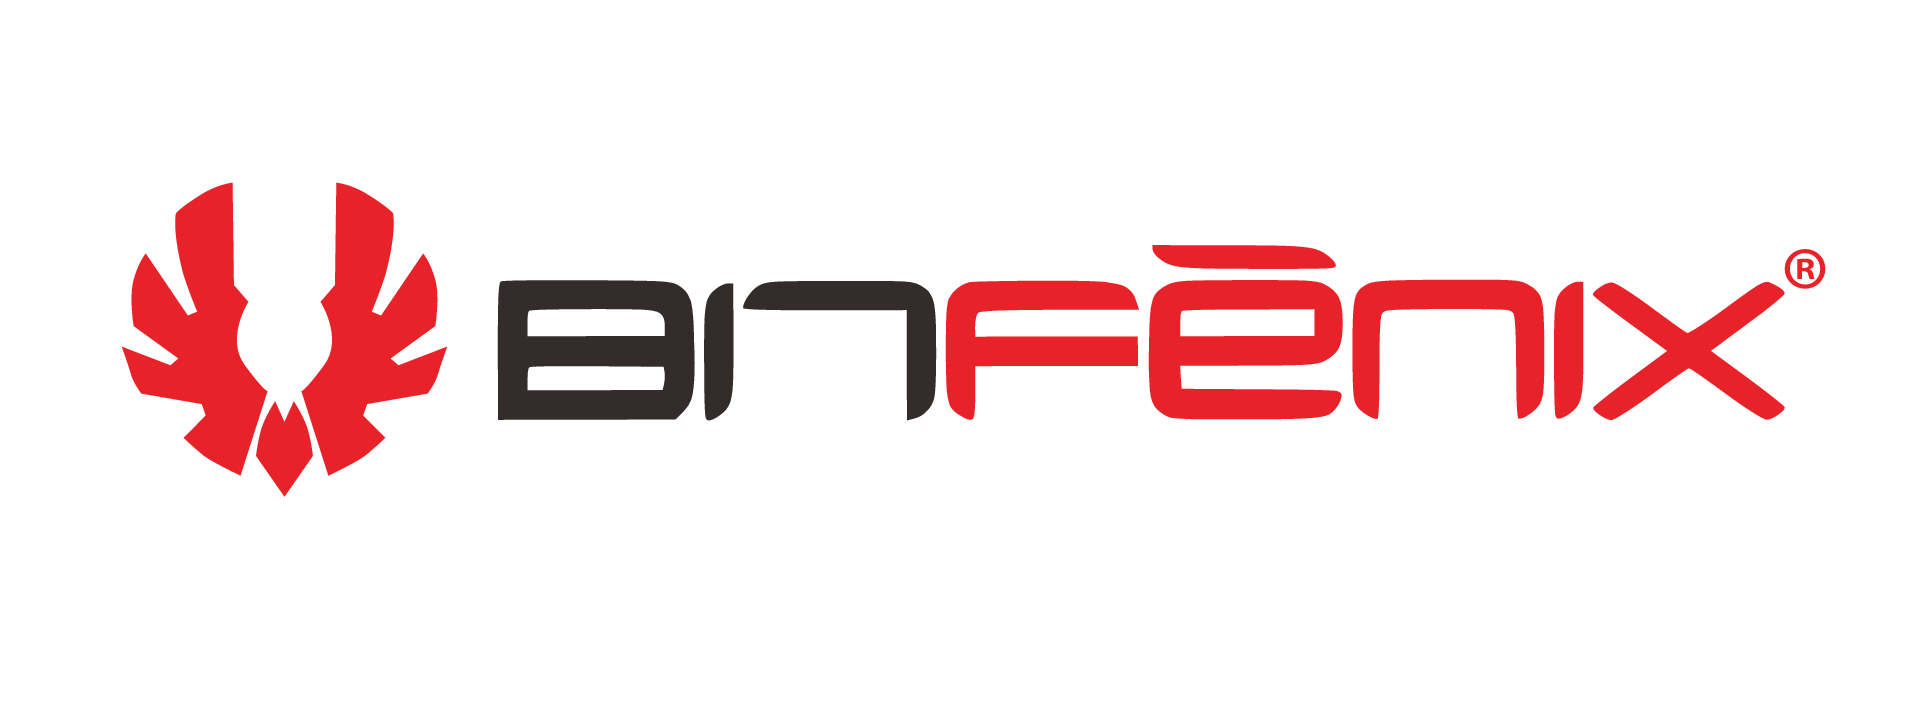 Bitfenix logo